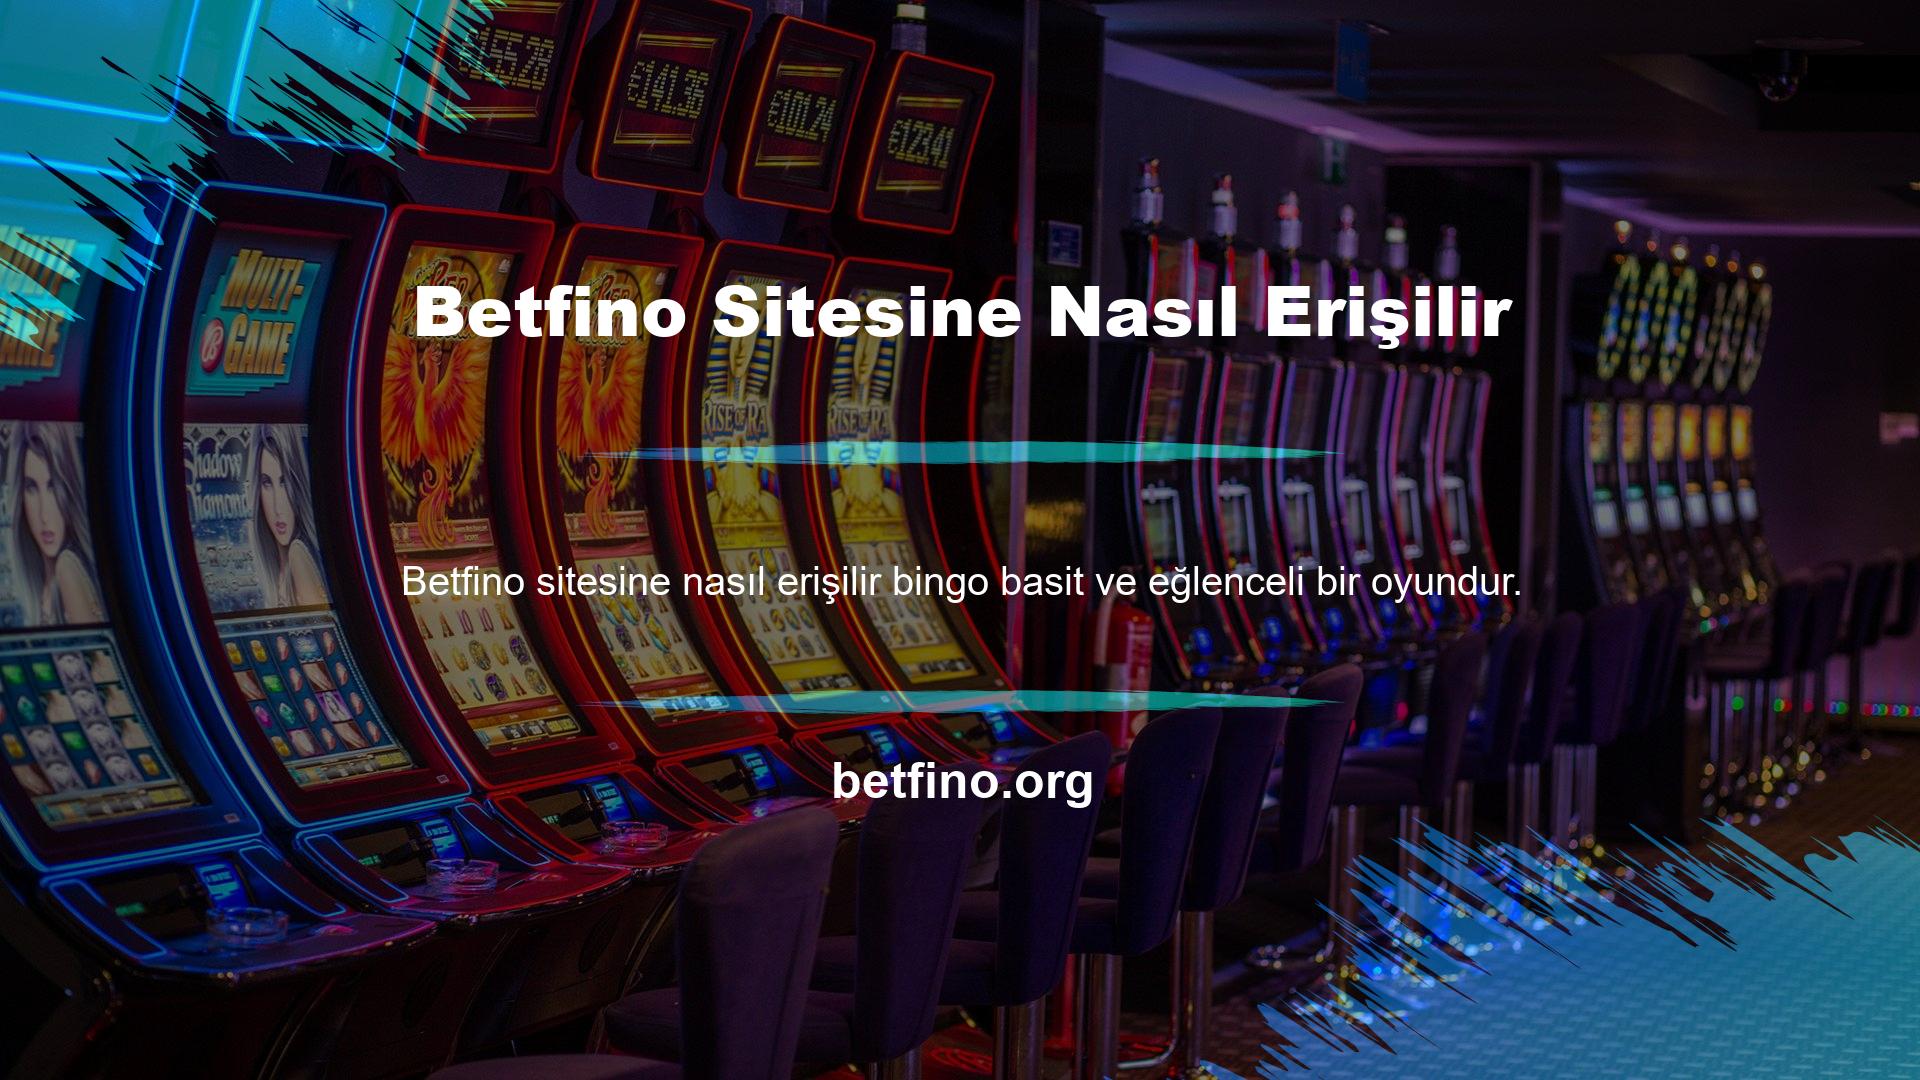 Betfino yılbaşı gecesinde olmazsa olmaz oyunlarından biri de casino endüstrisinde büyük ses getiren tombala oyunudur